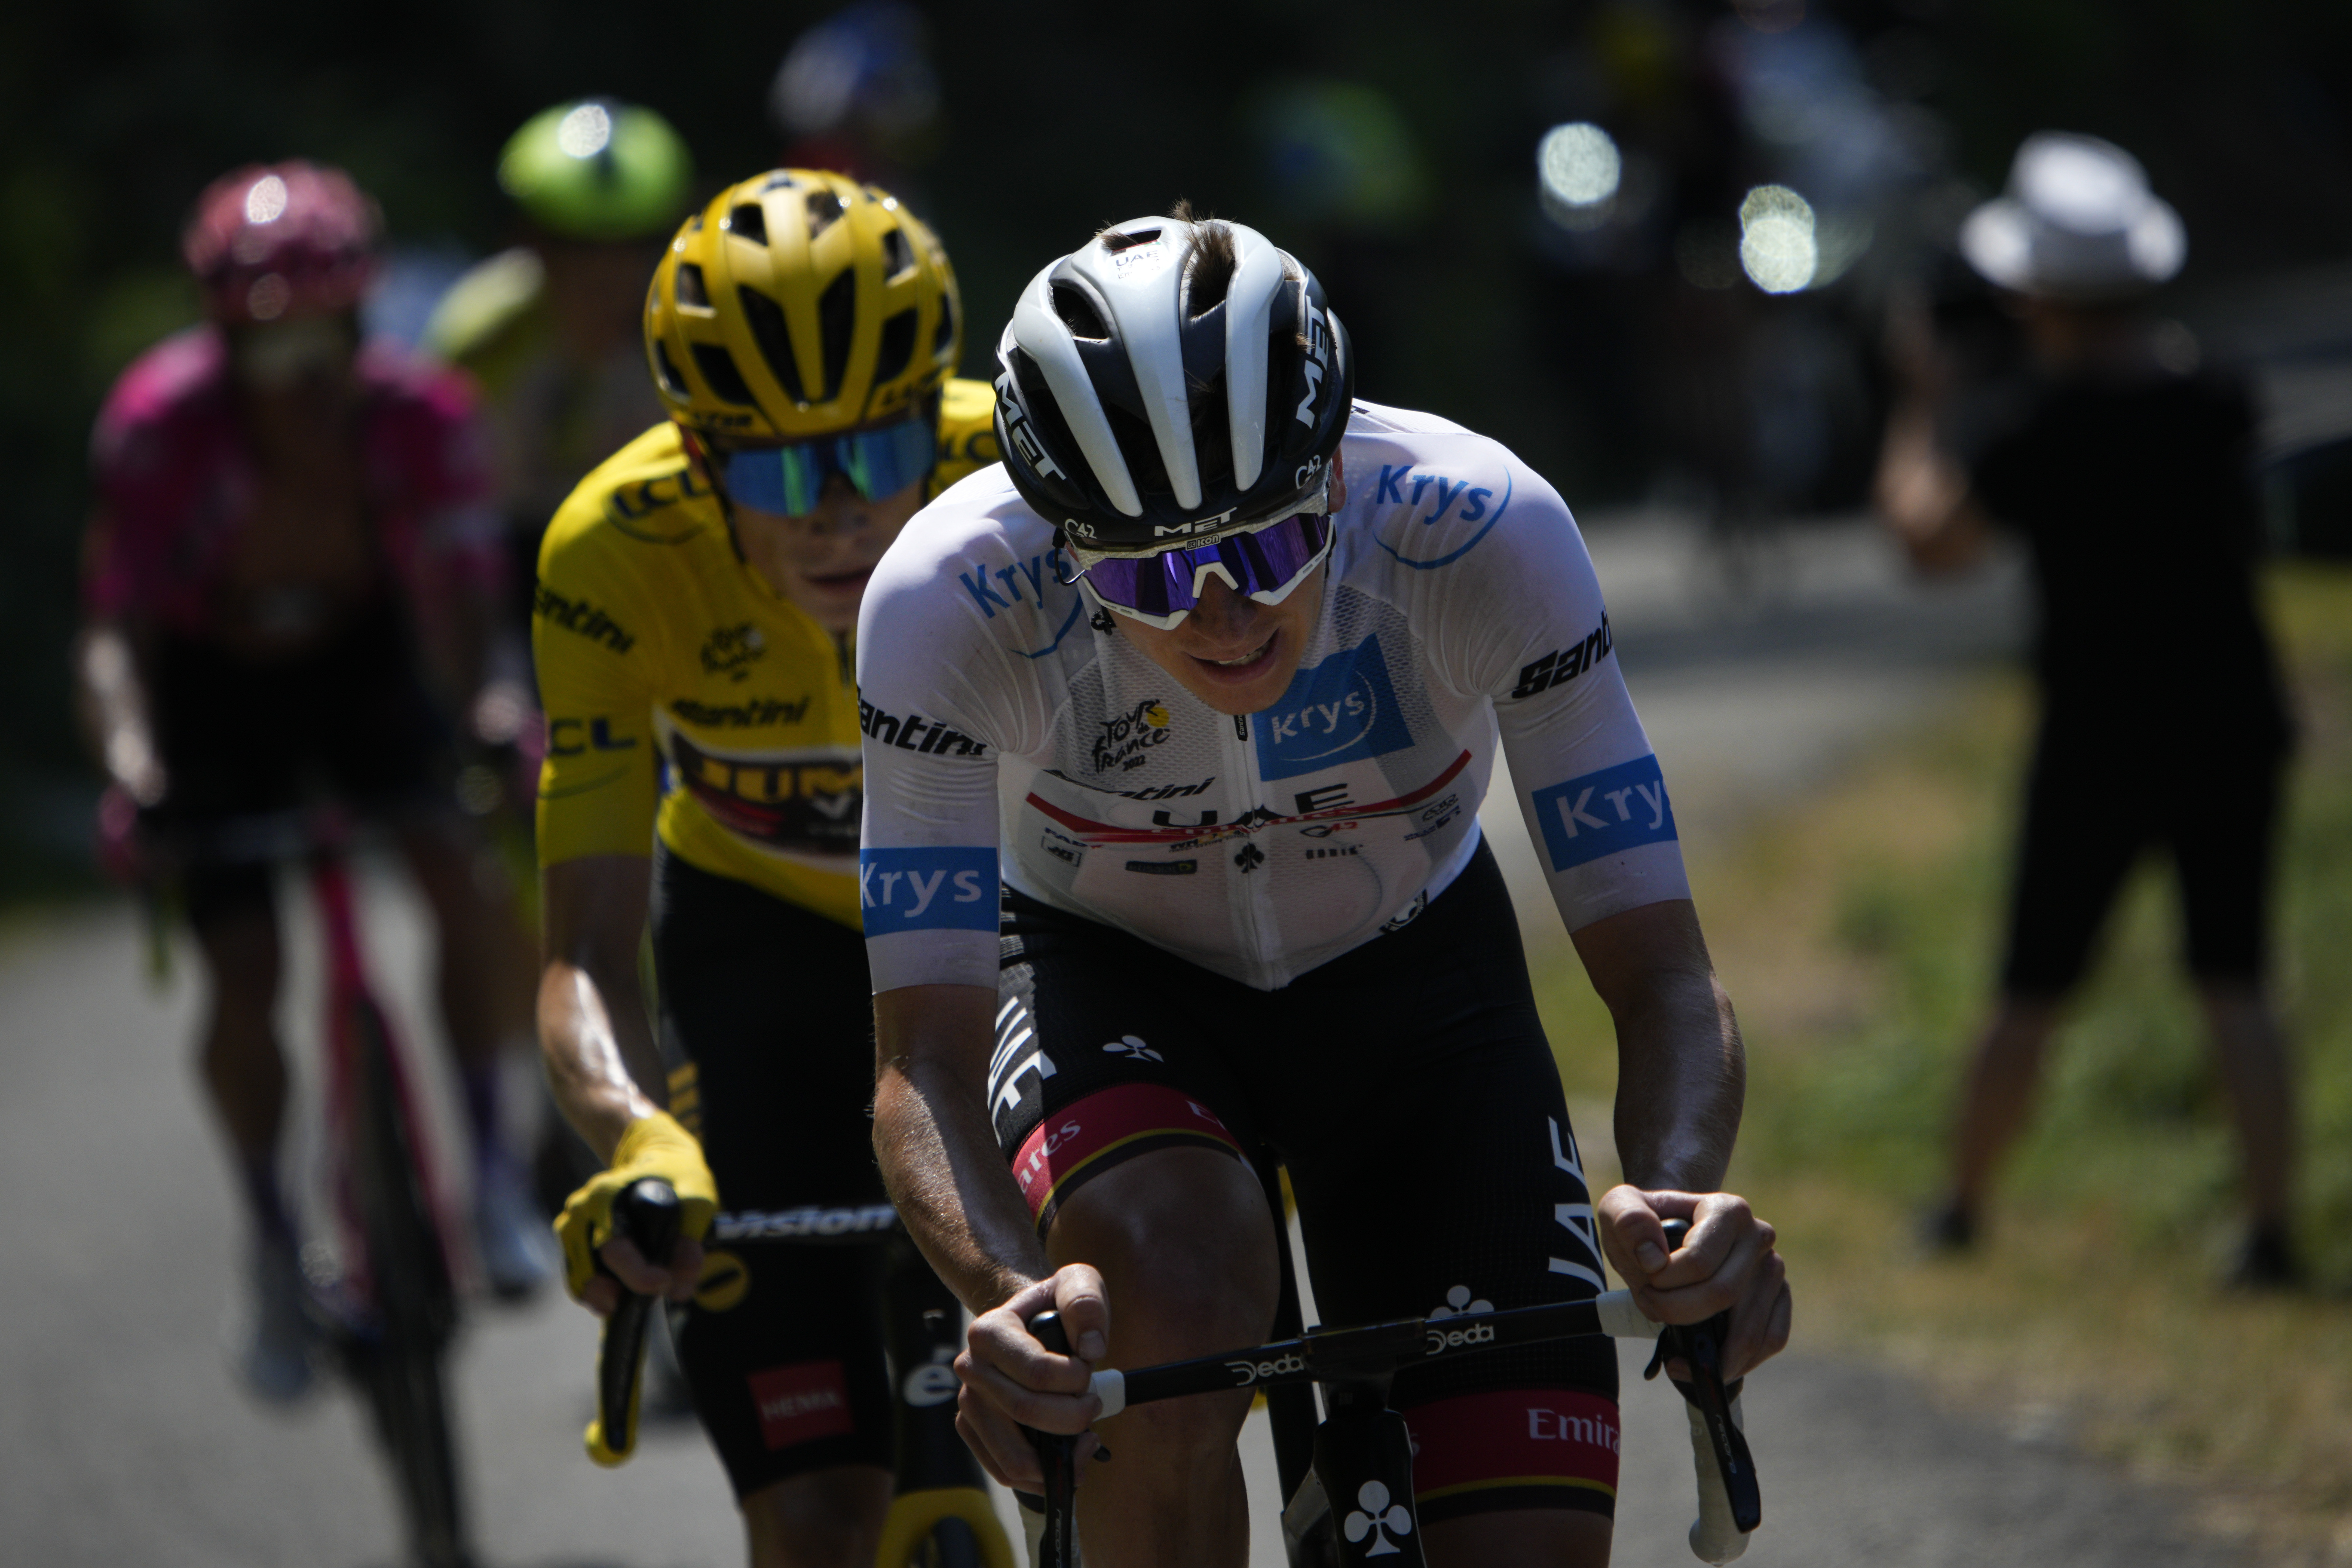 Vista previa de la carrera en ruta del Campeonato Mundial de Ruta UCI 2022, Cadel Evans van Aert Matthews Pogacar